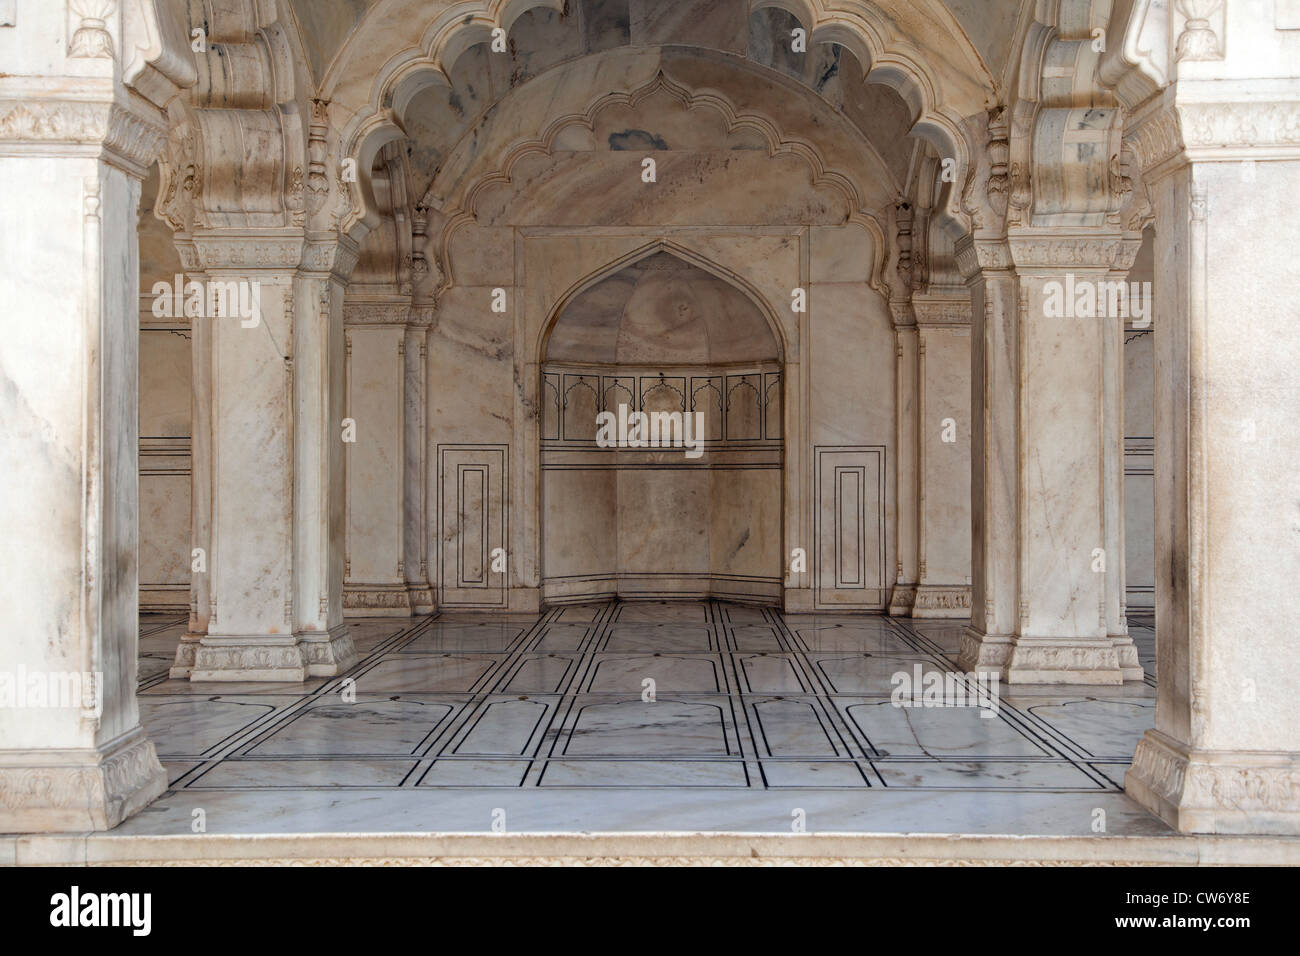 Interieur aus Marmor von der Agra Fort / Rotes Fort in Agra, Uttar Pradesh, Indien Stockfoto